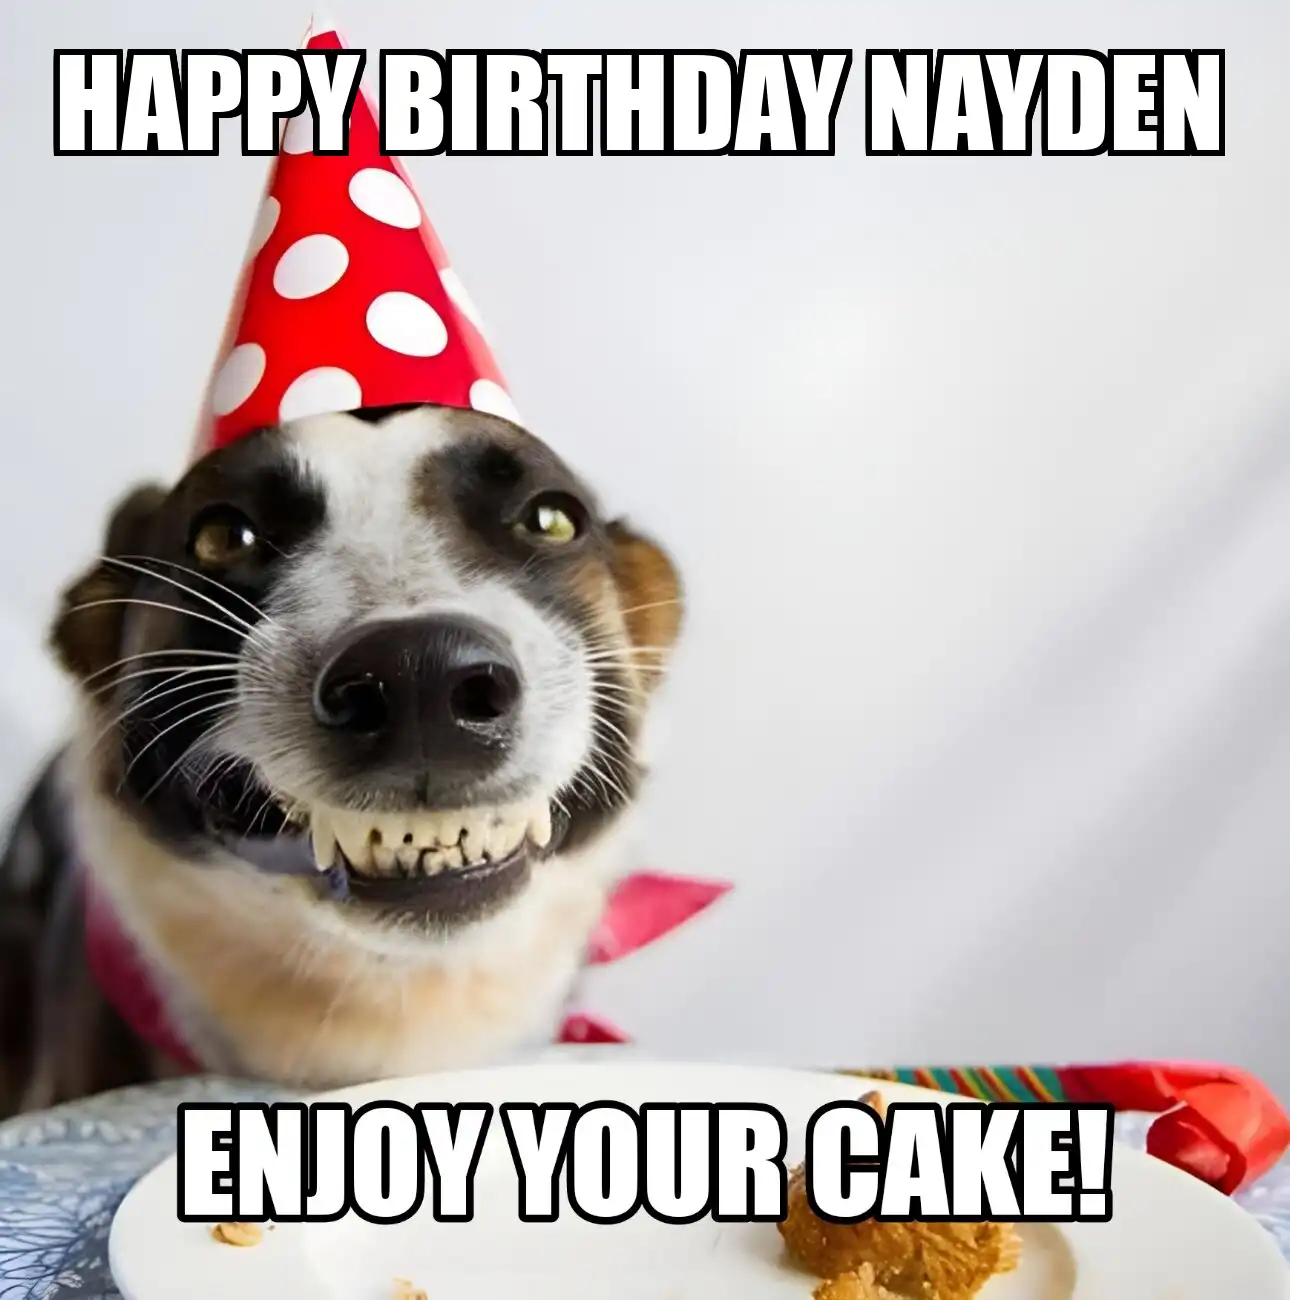 Happy Birthday Nayden Enjoy Your Cake Dog Meme